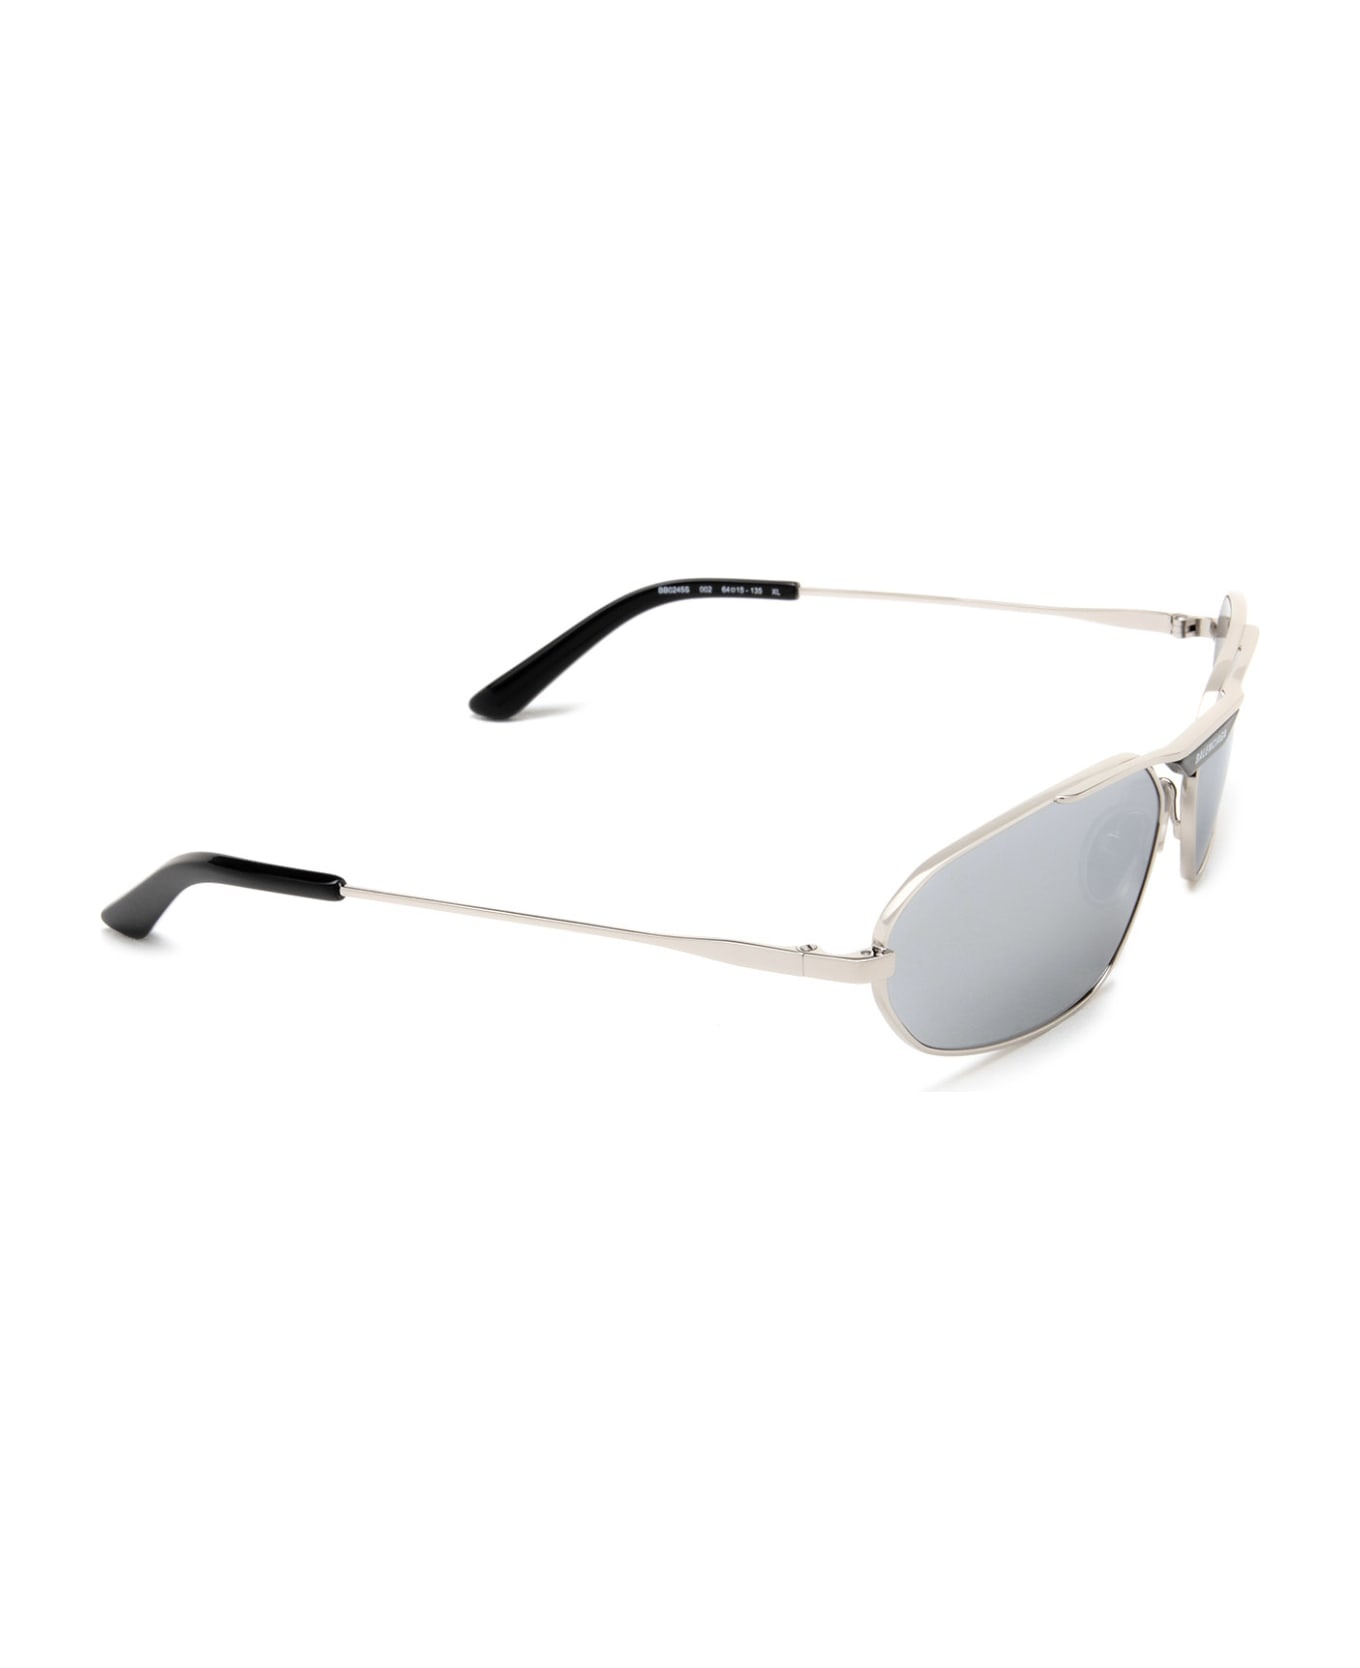 Bb0245s Silver Sunglasses - 2